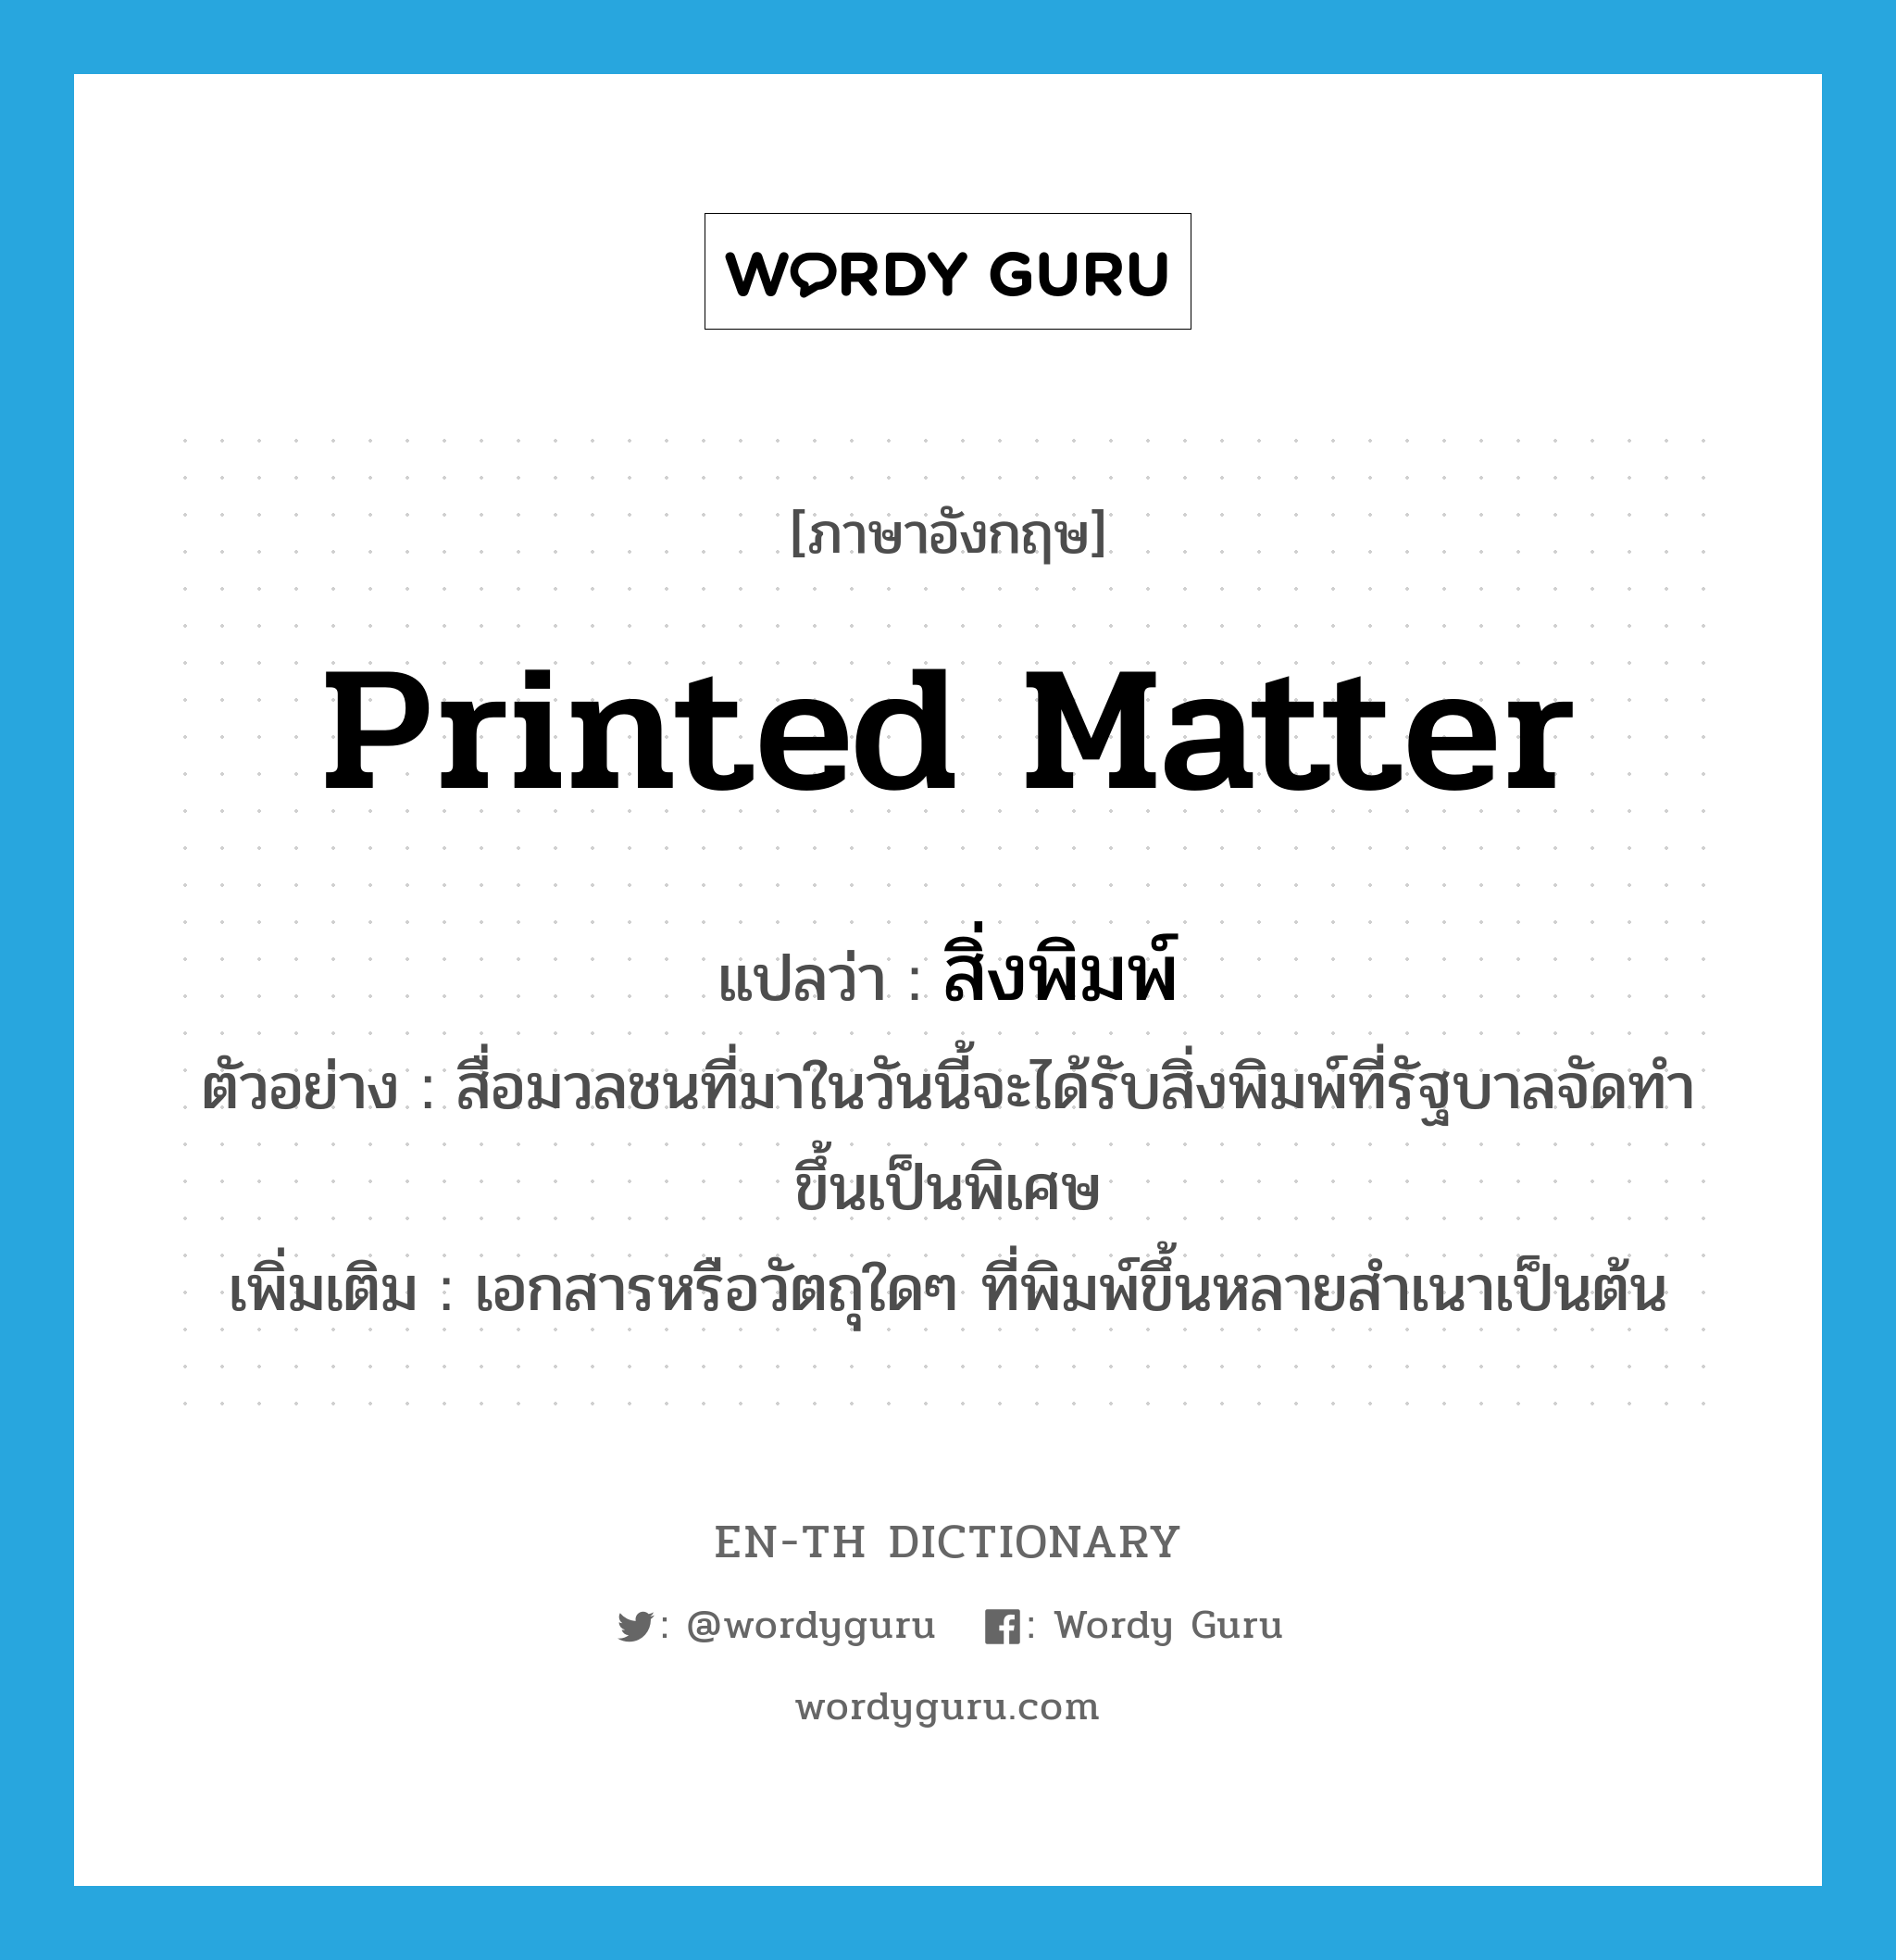 printed matter แปลว่า?, คำศัพท์ภาษาอังกฤษ printed matter แปลว่า สิ่งพิมพ์ ประเภท N ตัวอย่าง สื่อมวลชนที่มาในวันนี้จะได้รับสิ่งพิมพ์ที่รัฐบาลจัดทำขึ้นเป็นพิเศษ เพิ่มเติม เอกสารหรือวัตถุใดๆ ที่พิมพ์ขึ้นหลายสำเนาเป็นต้น หมวด N